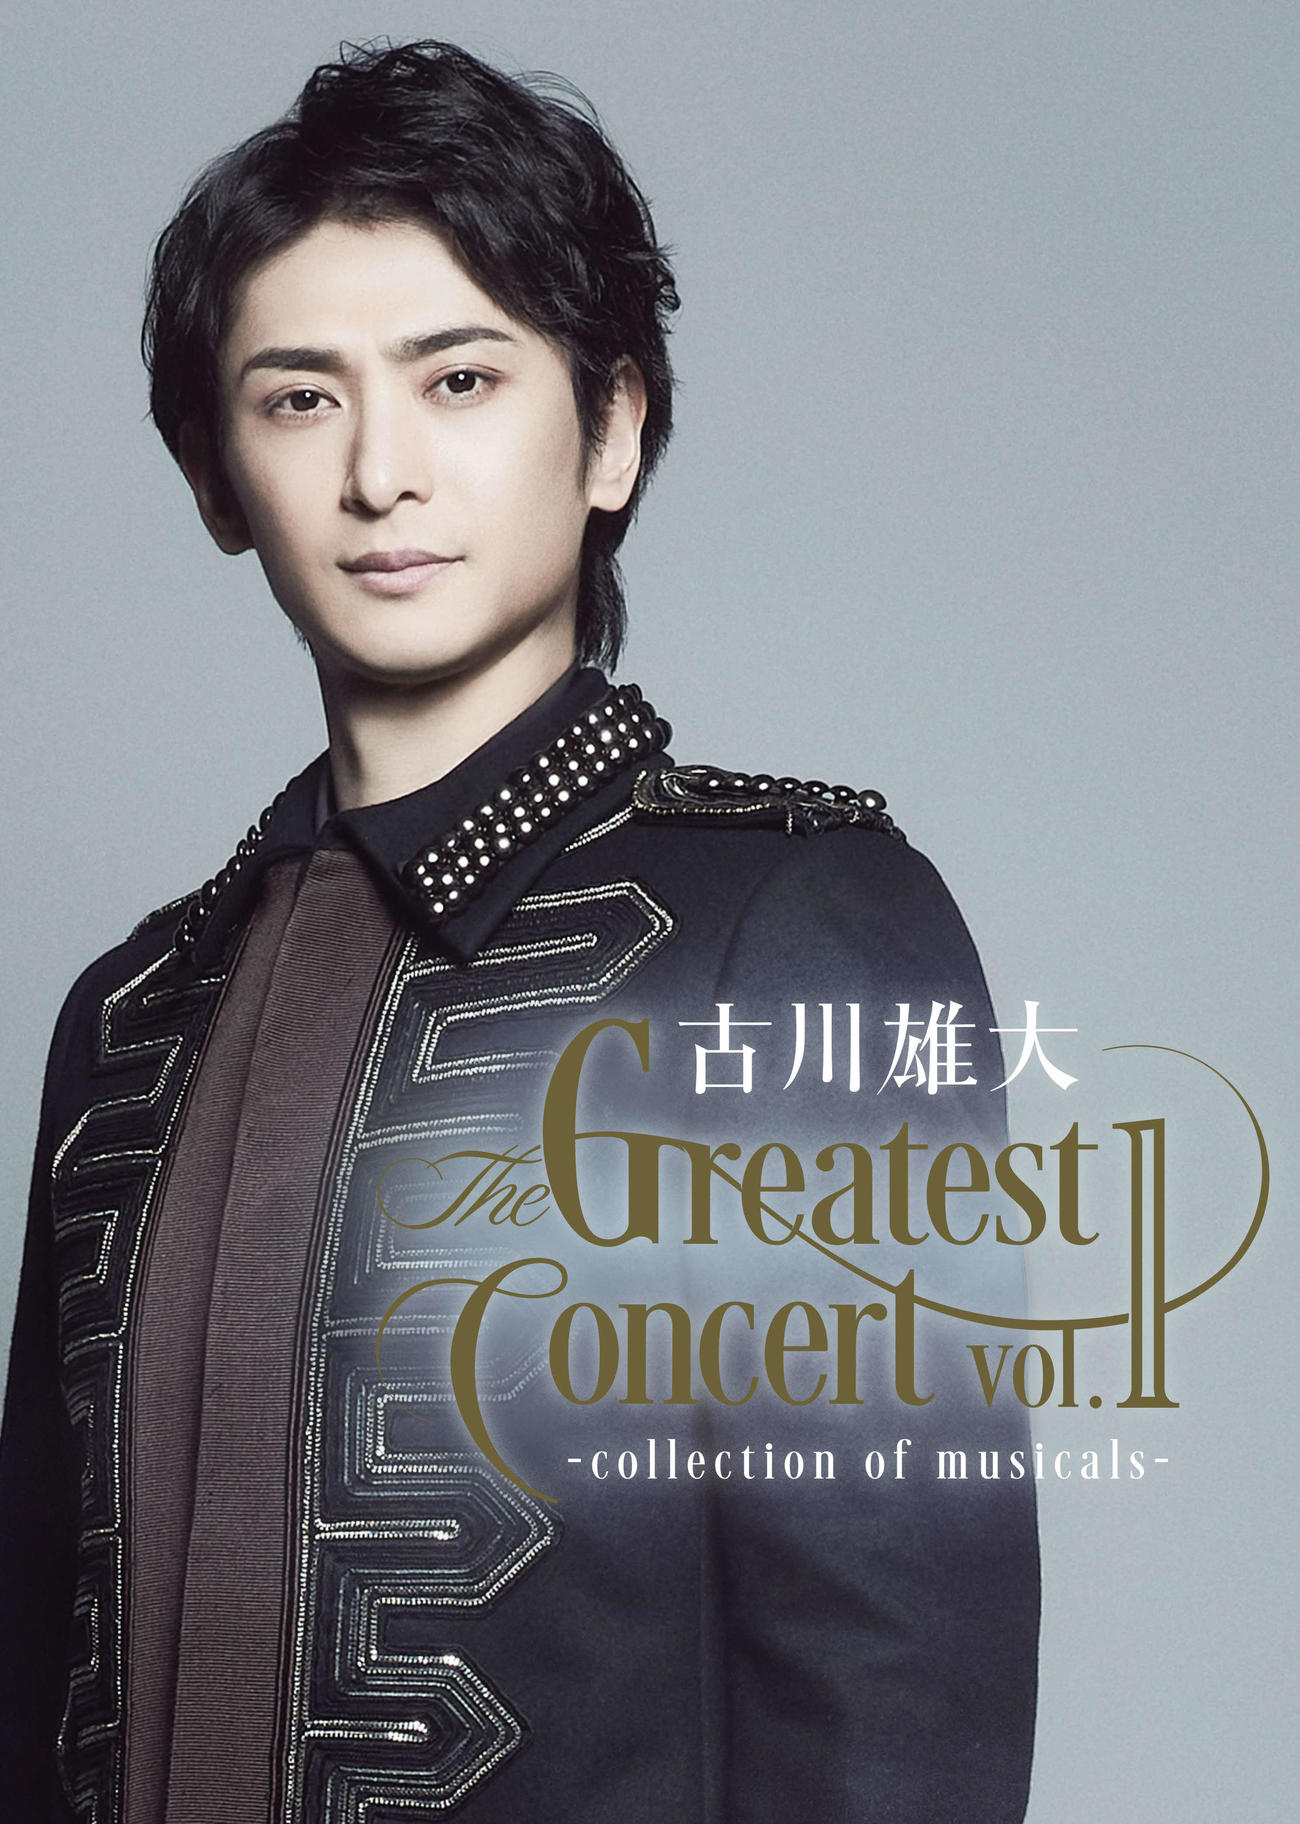 説明文の間違いです古川雄大 The Greatest Concert vol.2